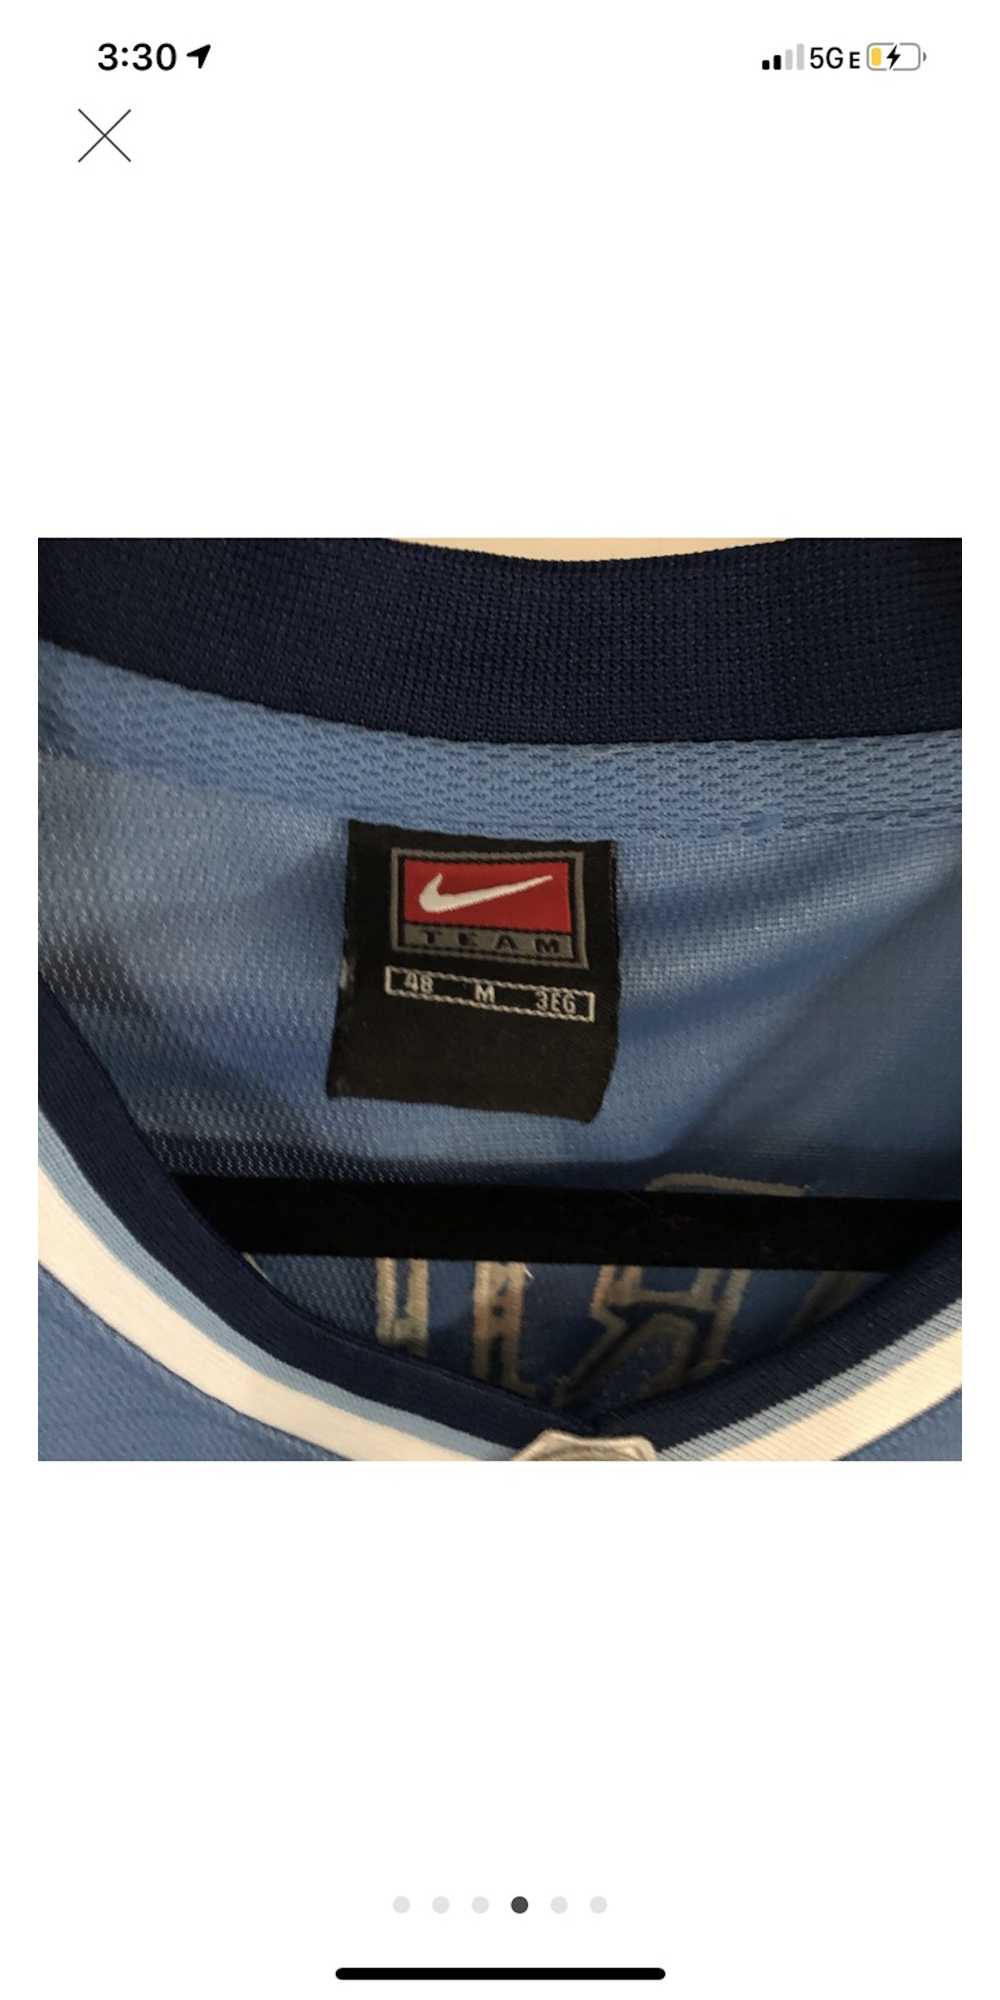 Nike Jordan North Carolina collage Jersey - image 4